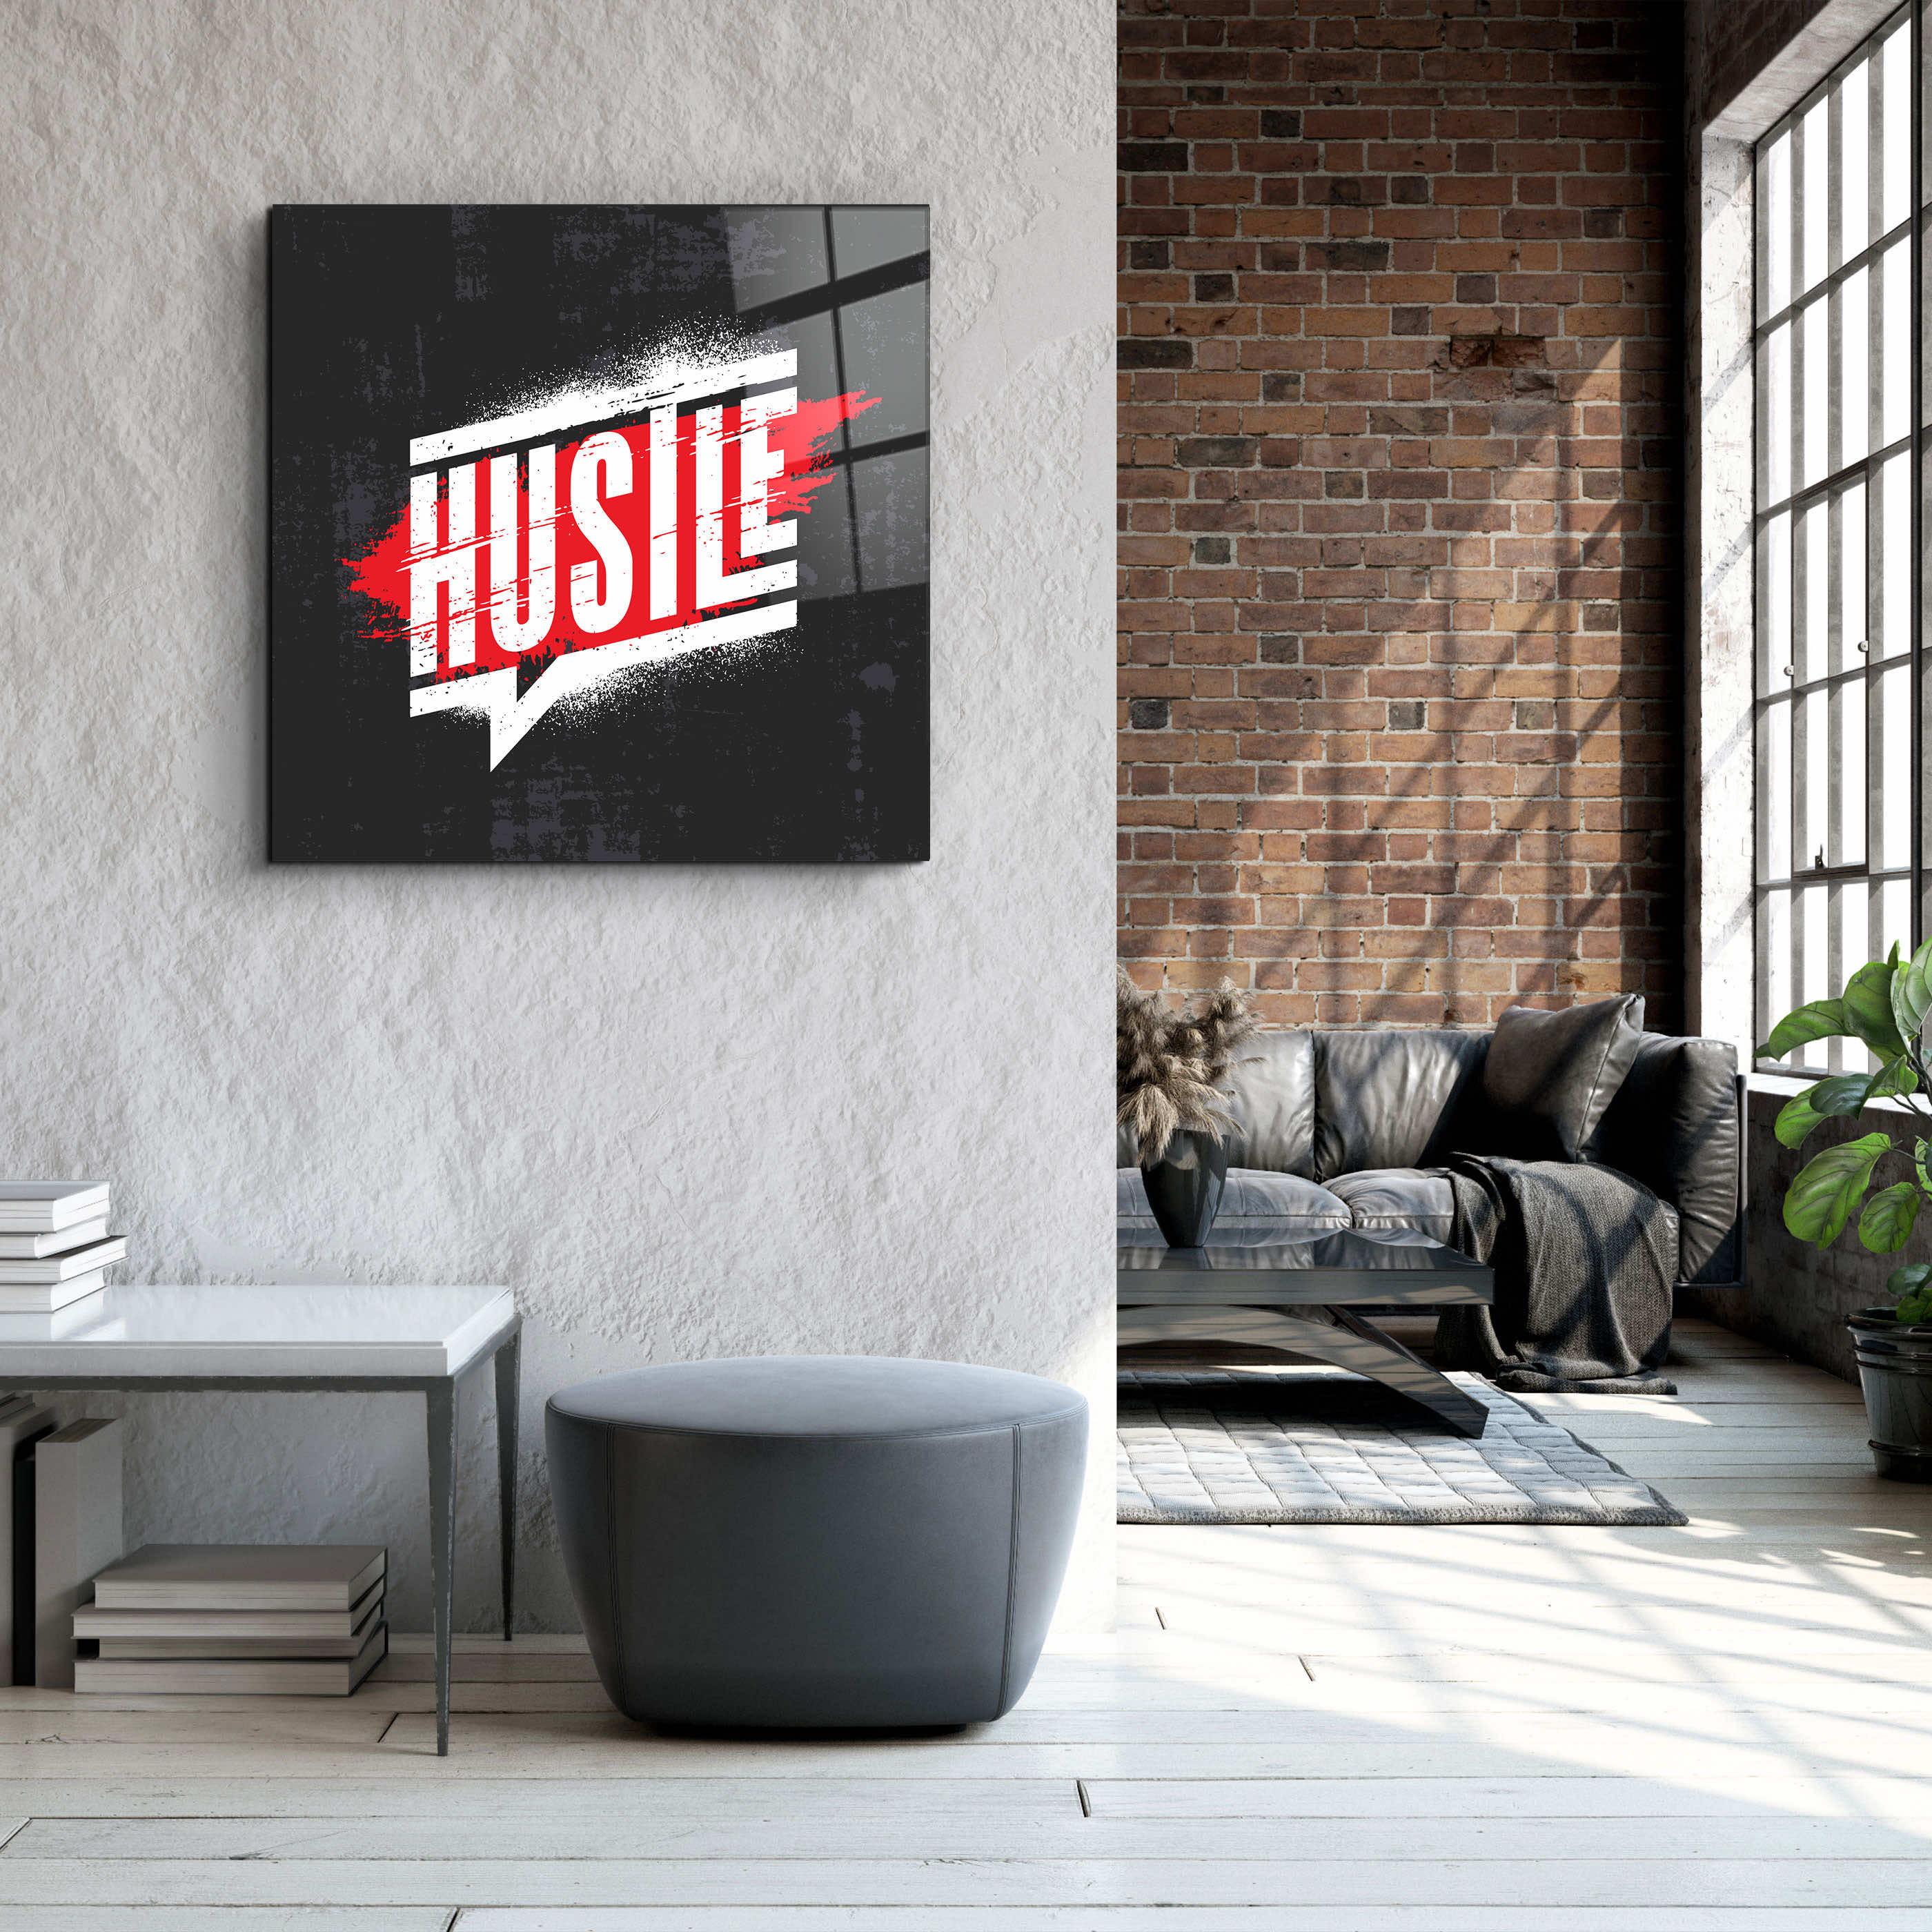 ."Hustle". Motivational Glass Wall Art